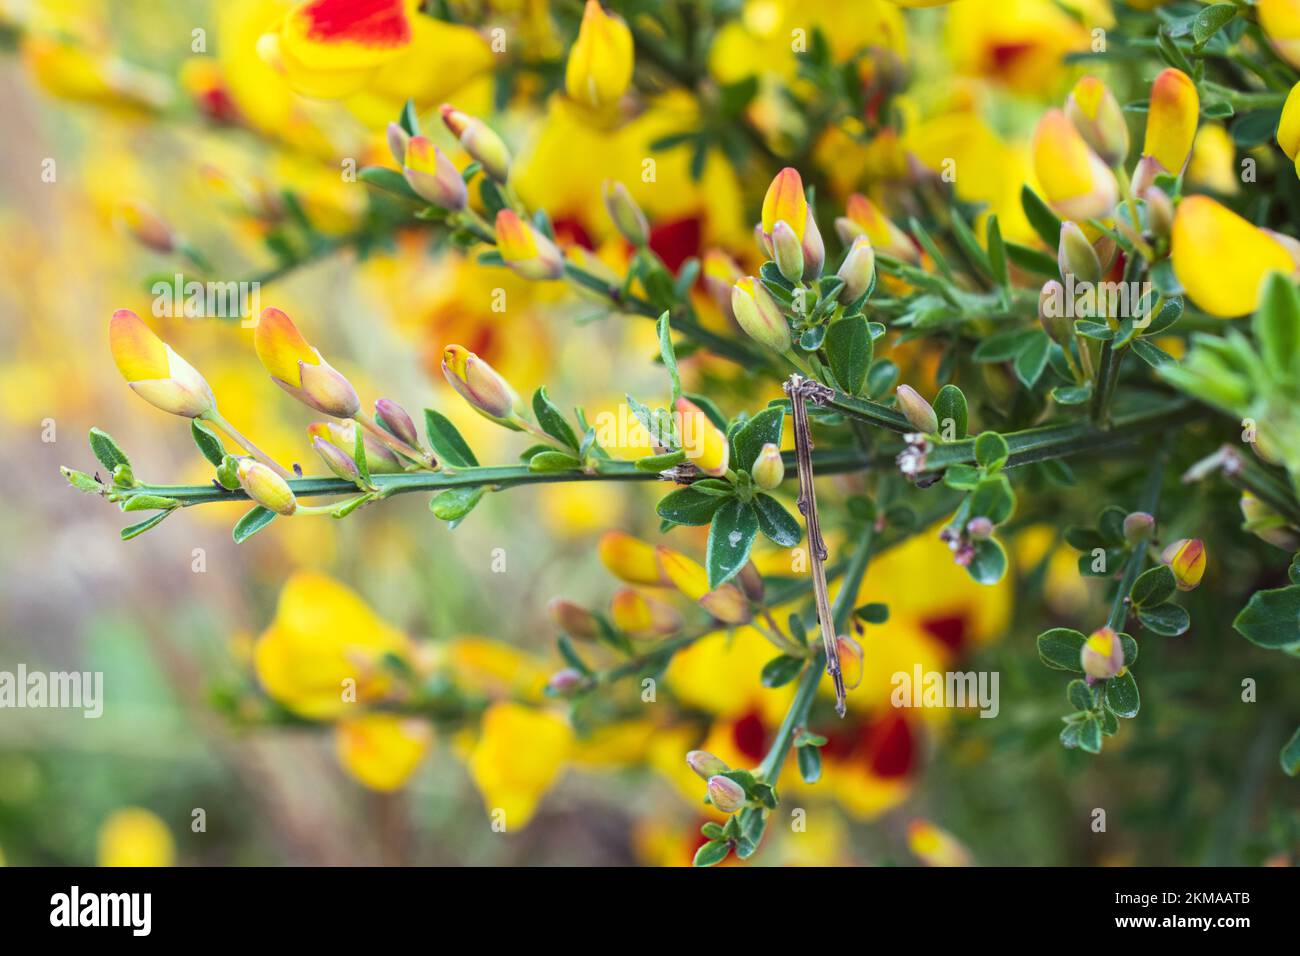 Plantas vibrantes de escoba escocesa en flor en Ushuaia, Argentina. En plena floración con ricos tonos de amarillo y rojo. Foto de stock